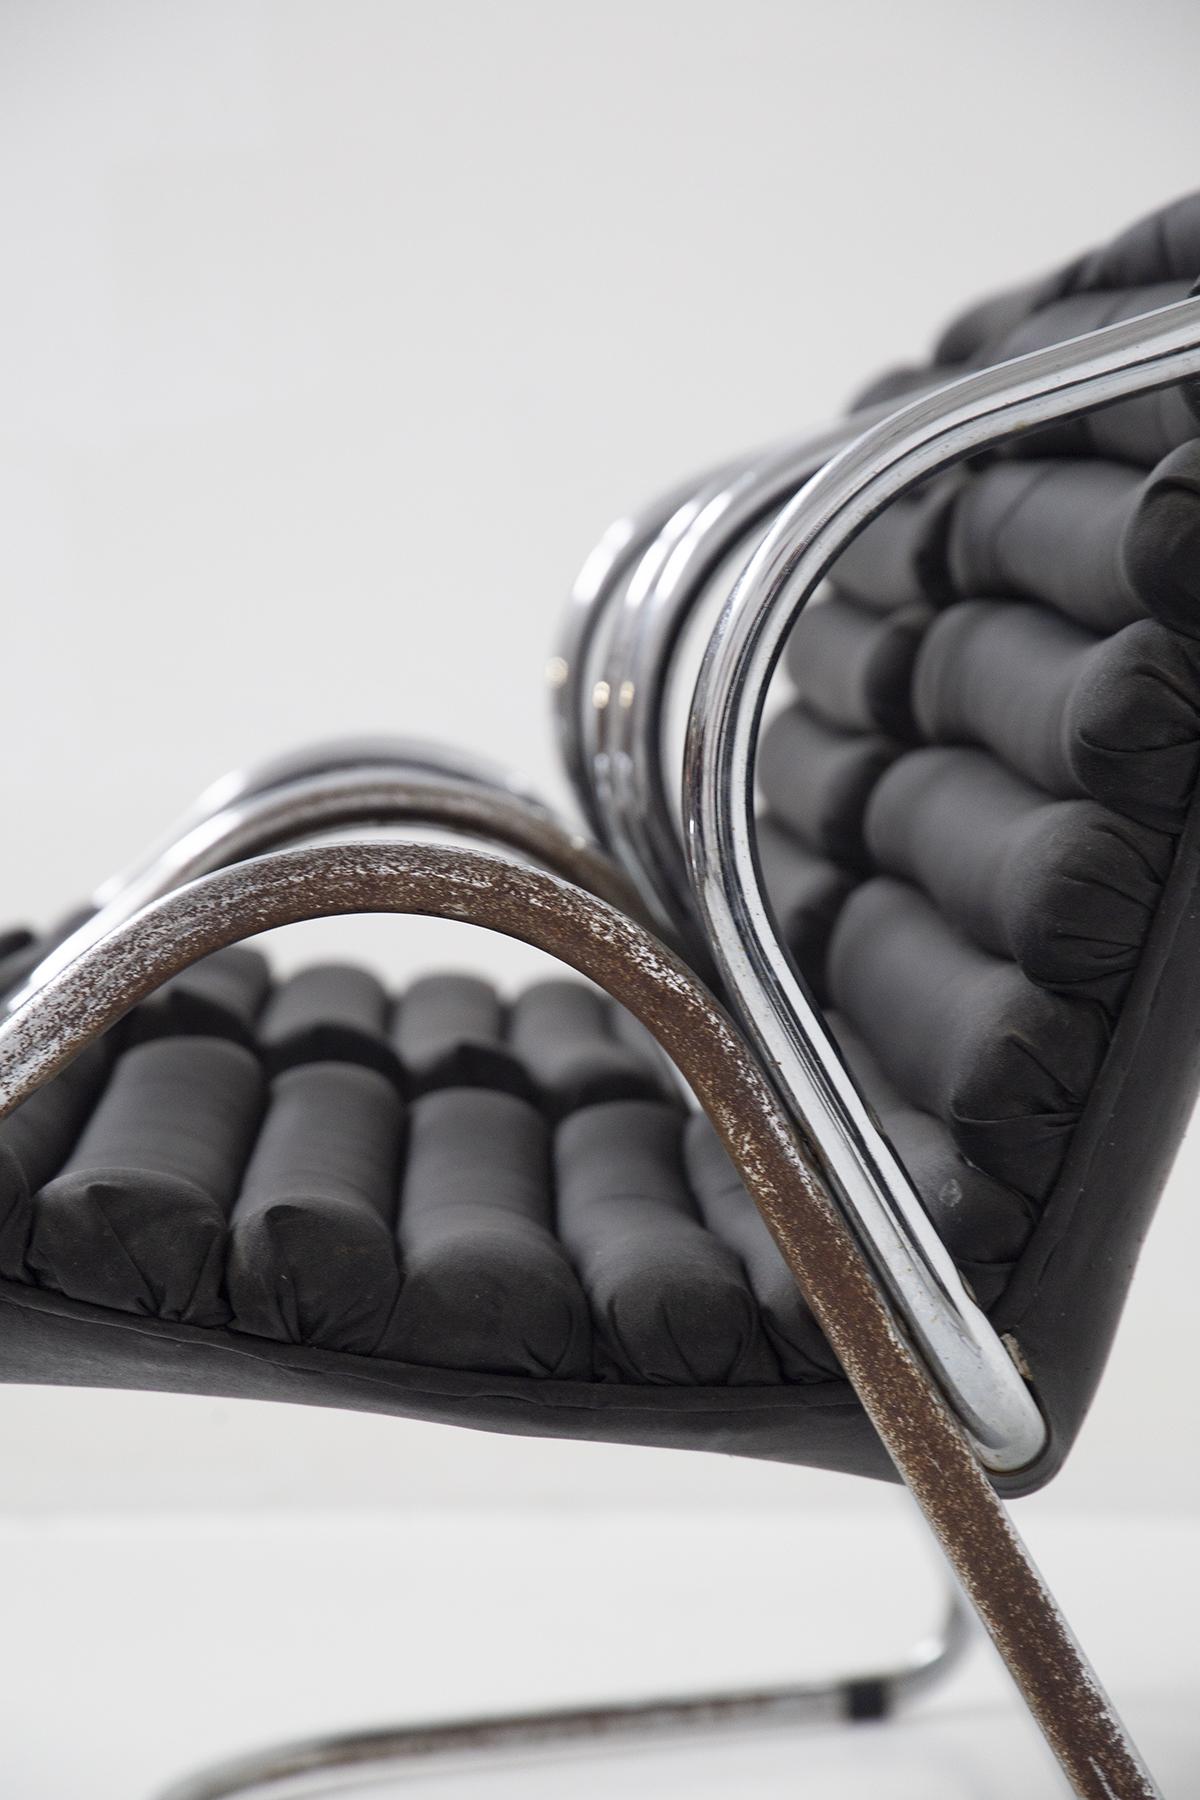 Skurriles Set bestehend aus vier feinen, in Italien hergestellten Lederstühlen aus den 1960er Jahren.
Das Gestell ist aus verchromtem Stahl und hat einen einzigen halbrechteckigen Fuß, das Gestell hat eine sehr skurrile Form. Von den Füßen gehen